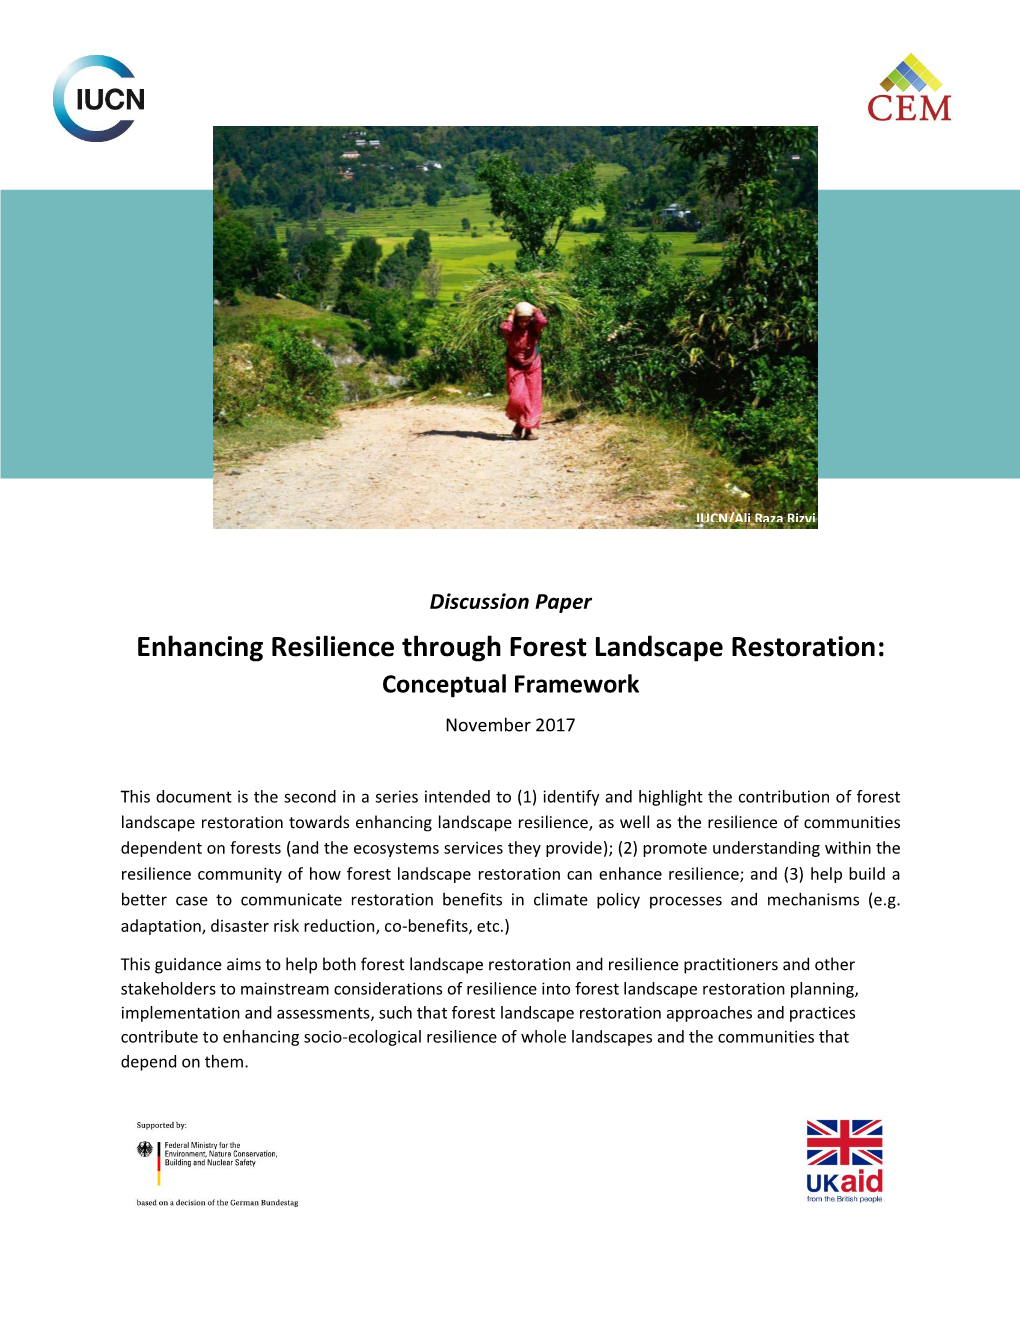 Enhancing Resilience Through Forest Landscape Restoration: Conceptual Framework November 2017